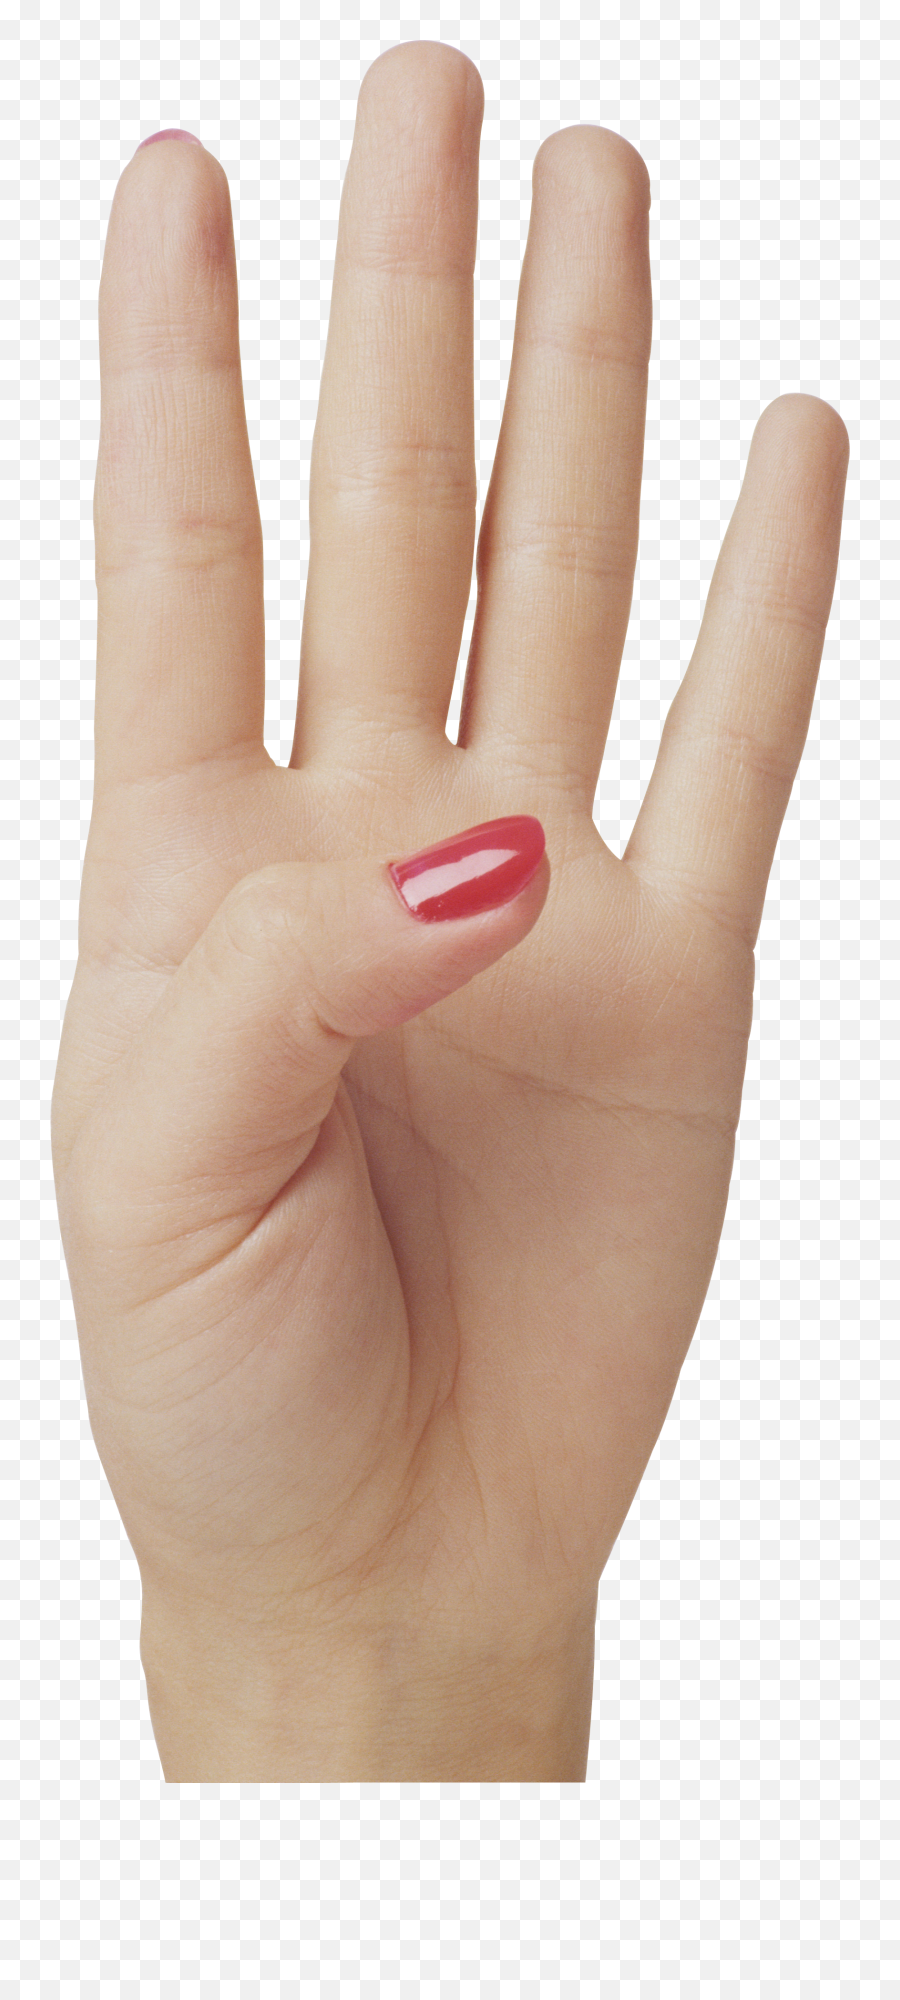 Hands Png And Vectors For Free Download - Dlpngcom Showing 4 On Fingers Emoji,Folding Hands Emoji